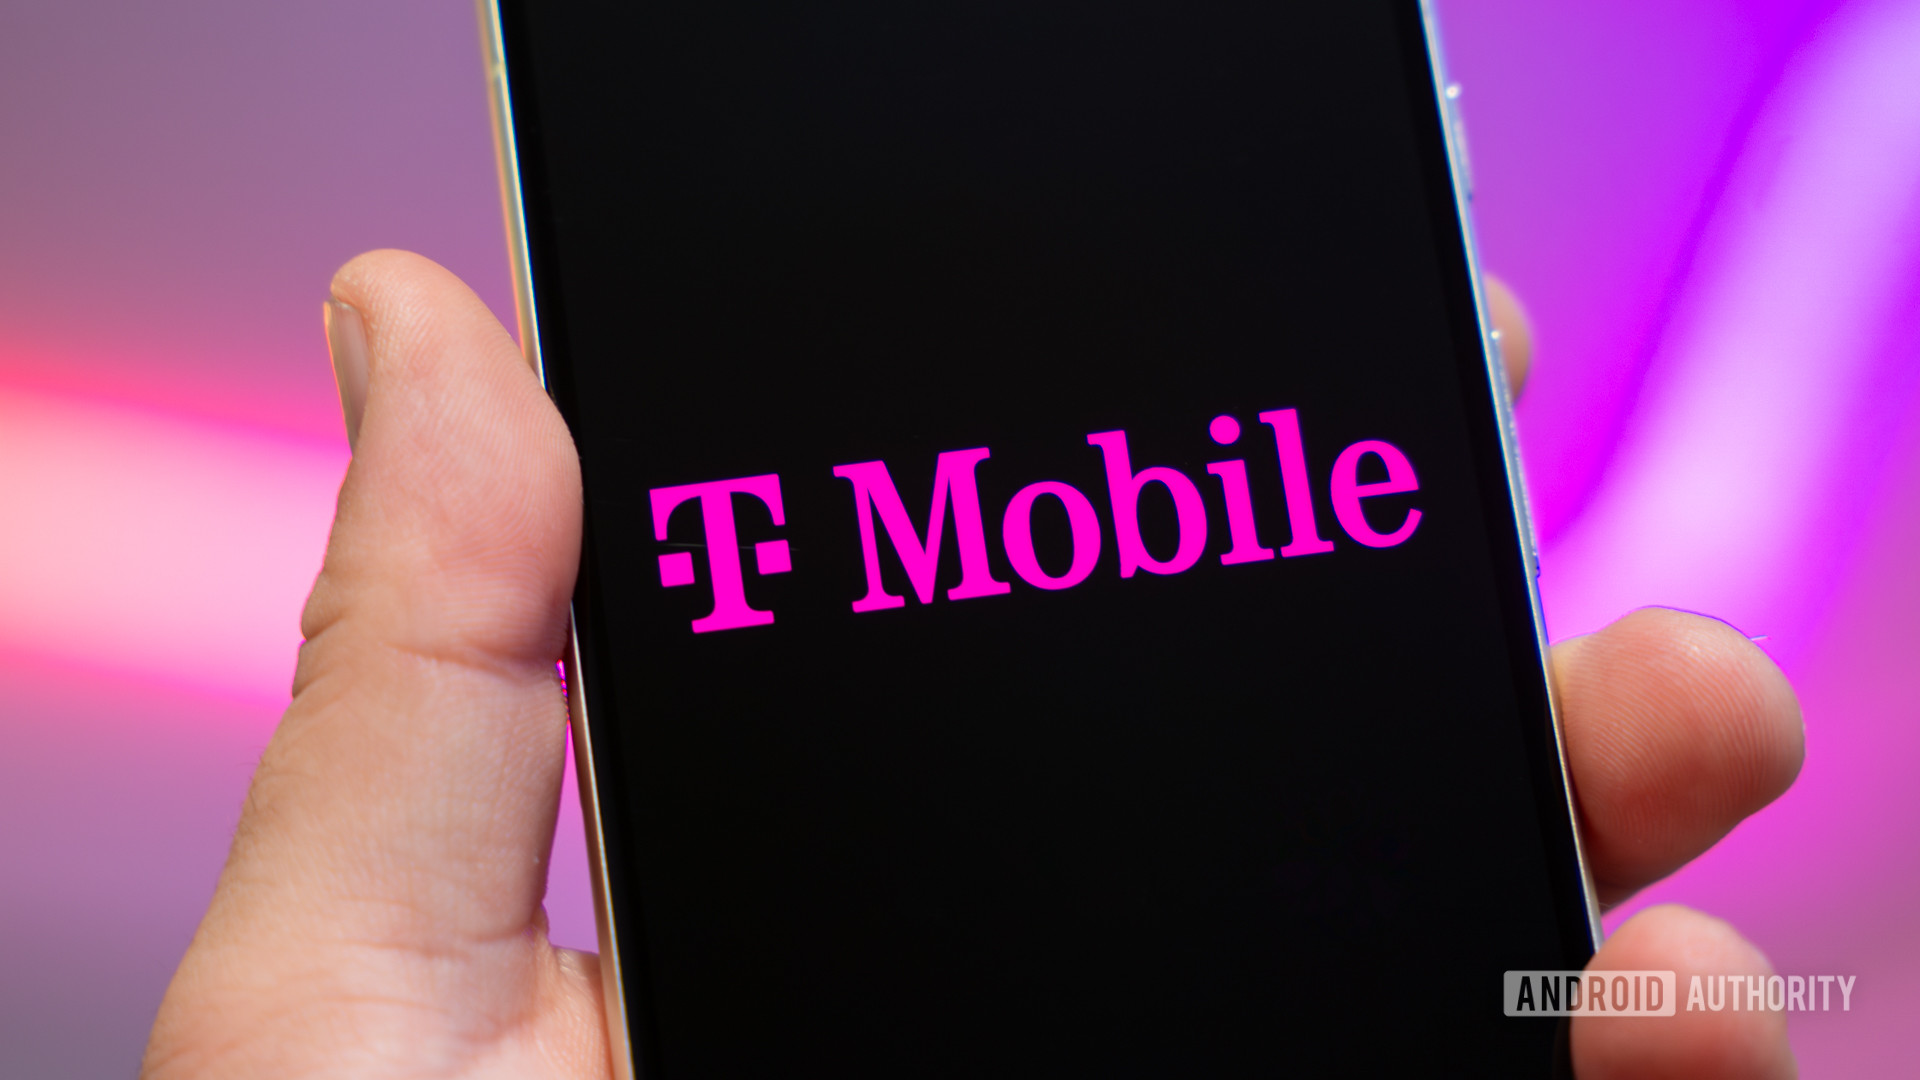 T-Mobile confirma que algunos planes heredados enfrentan un aumento de precio